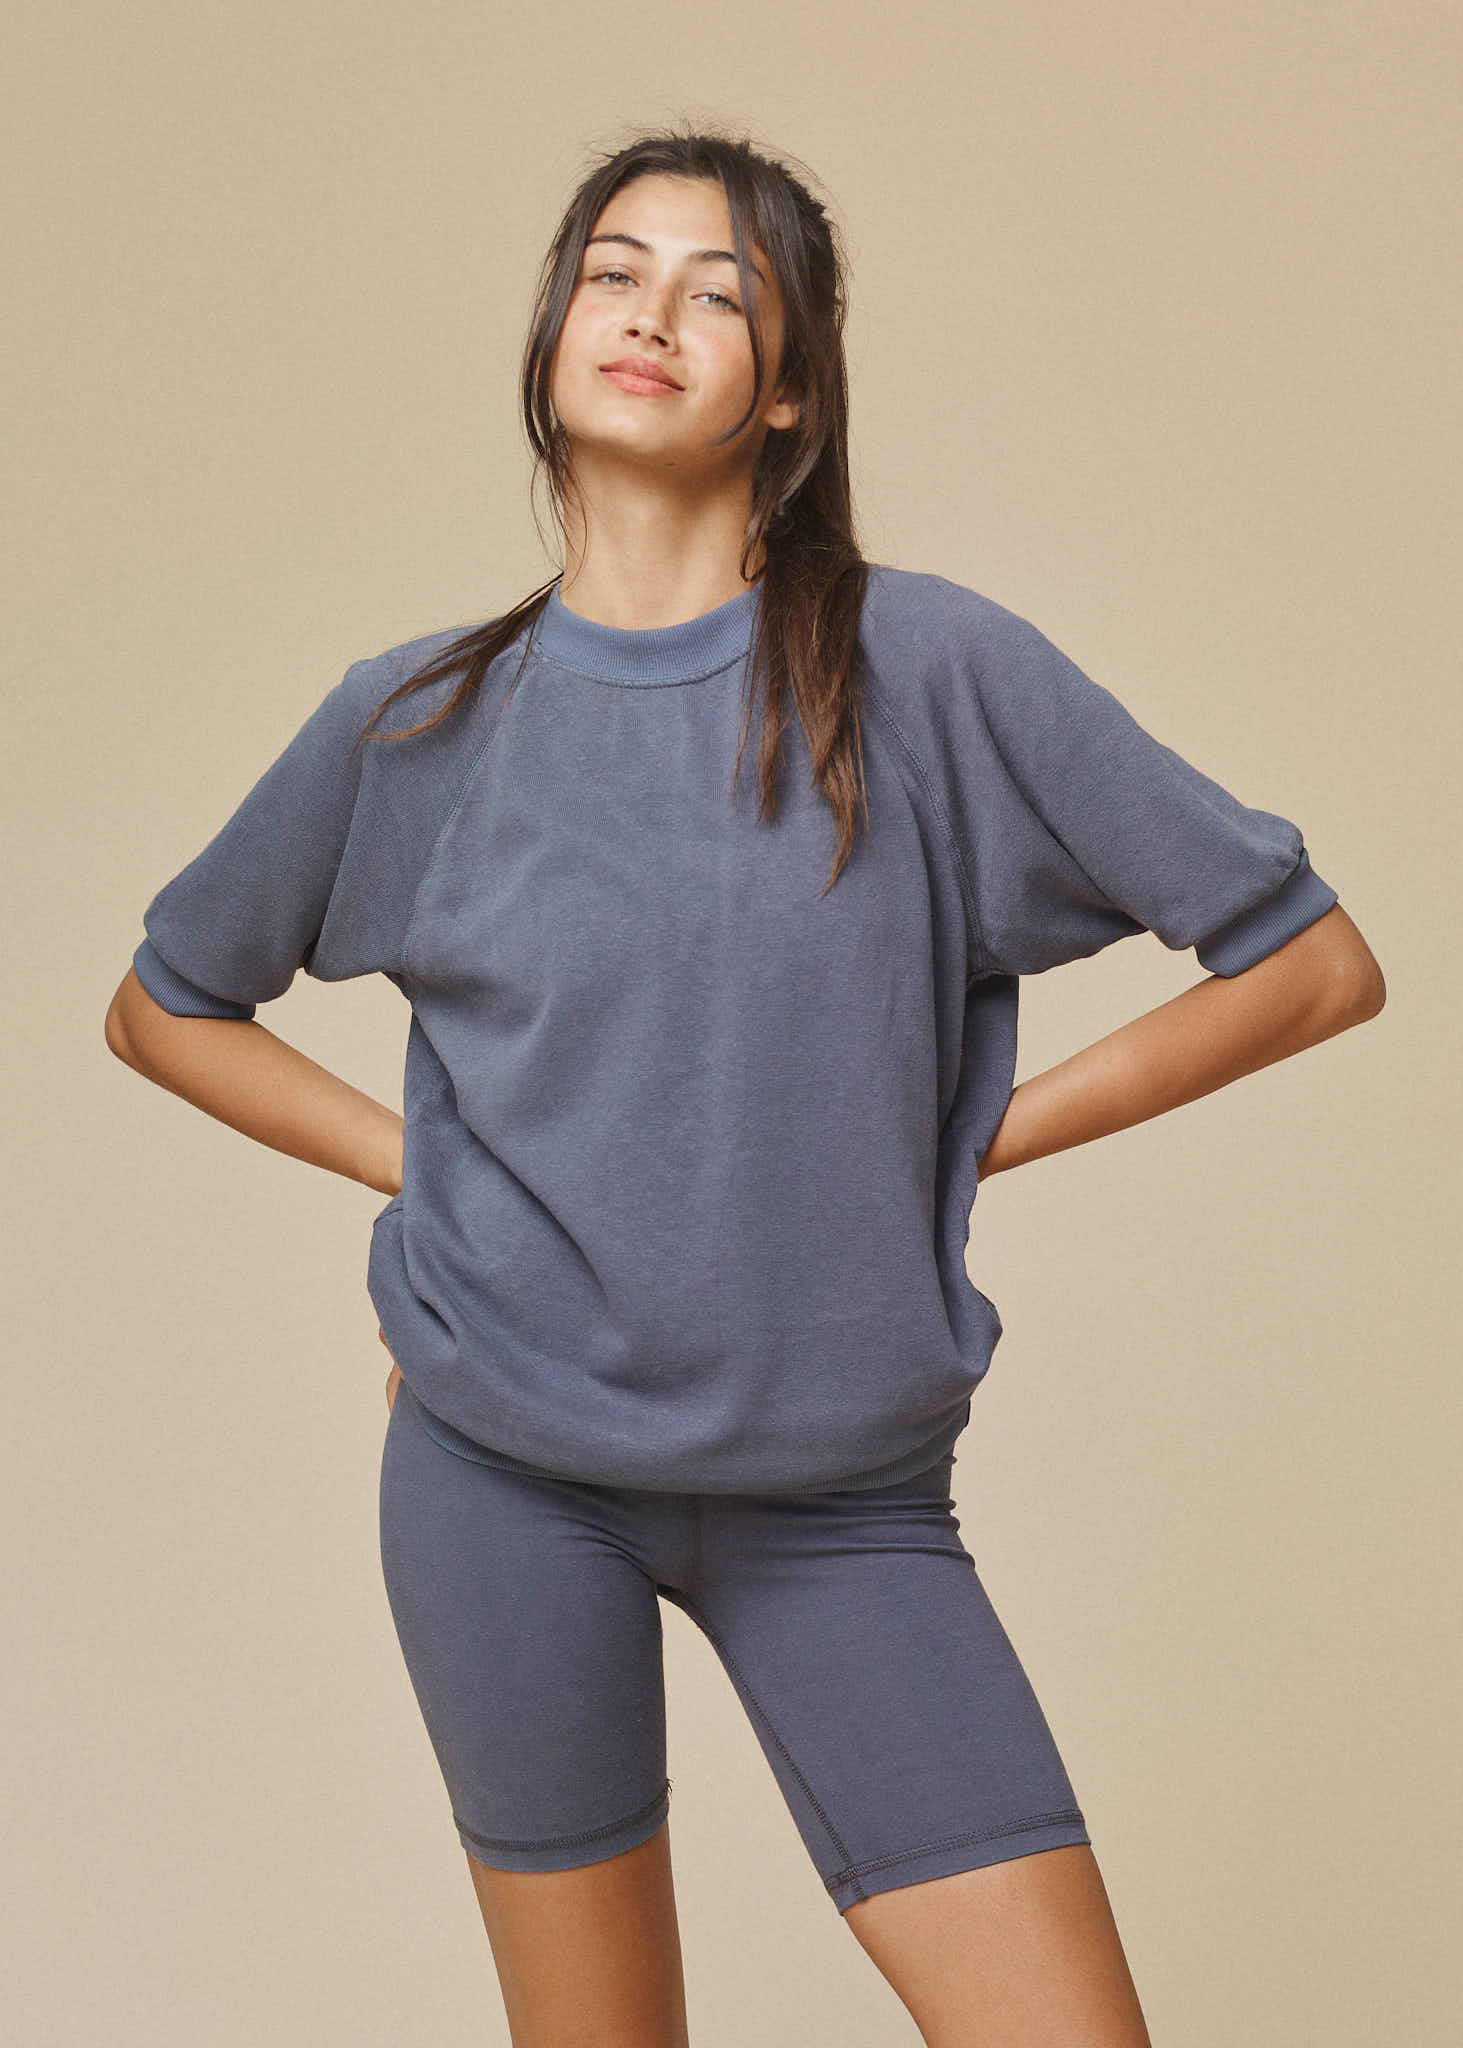 Short Sleeve Raglan Fleece Sweatshirt | Jungmaven Hemp Clothing & Accessories / model_desc: Meeya is  5’6” wearing XS